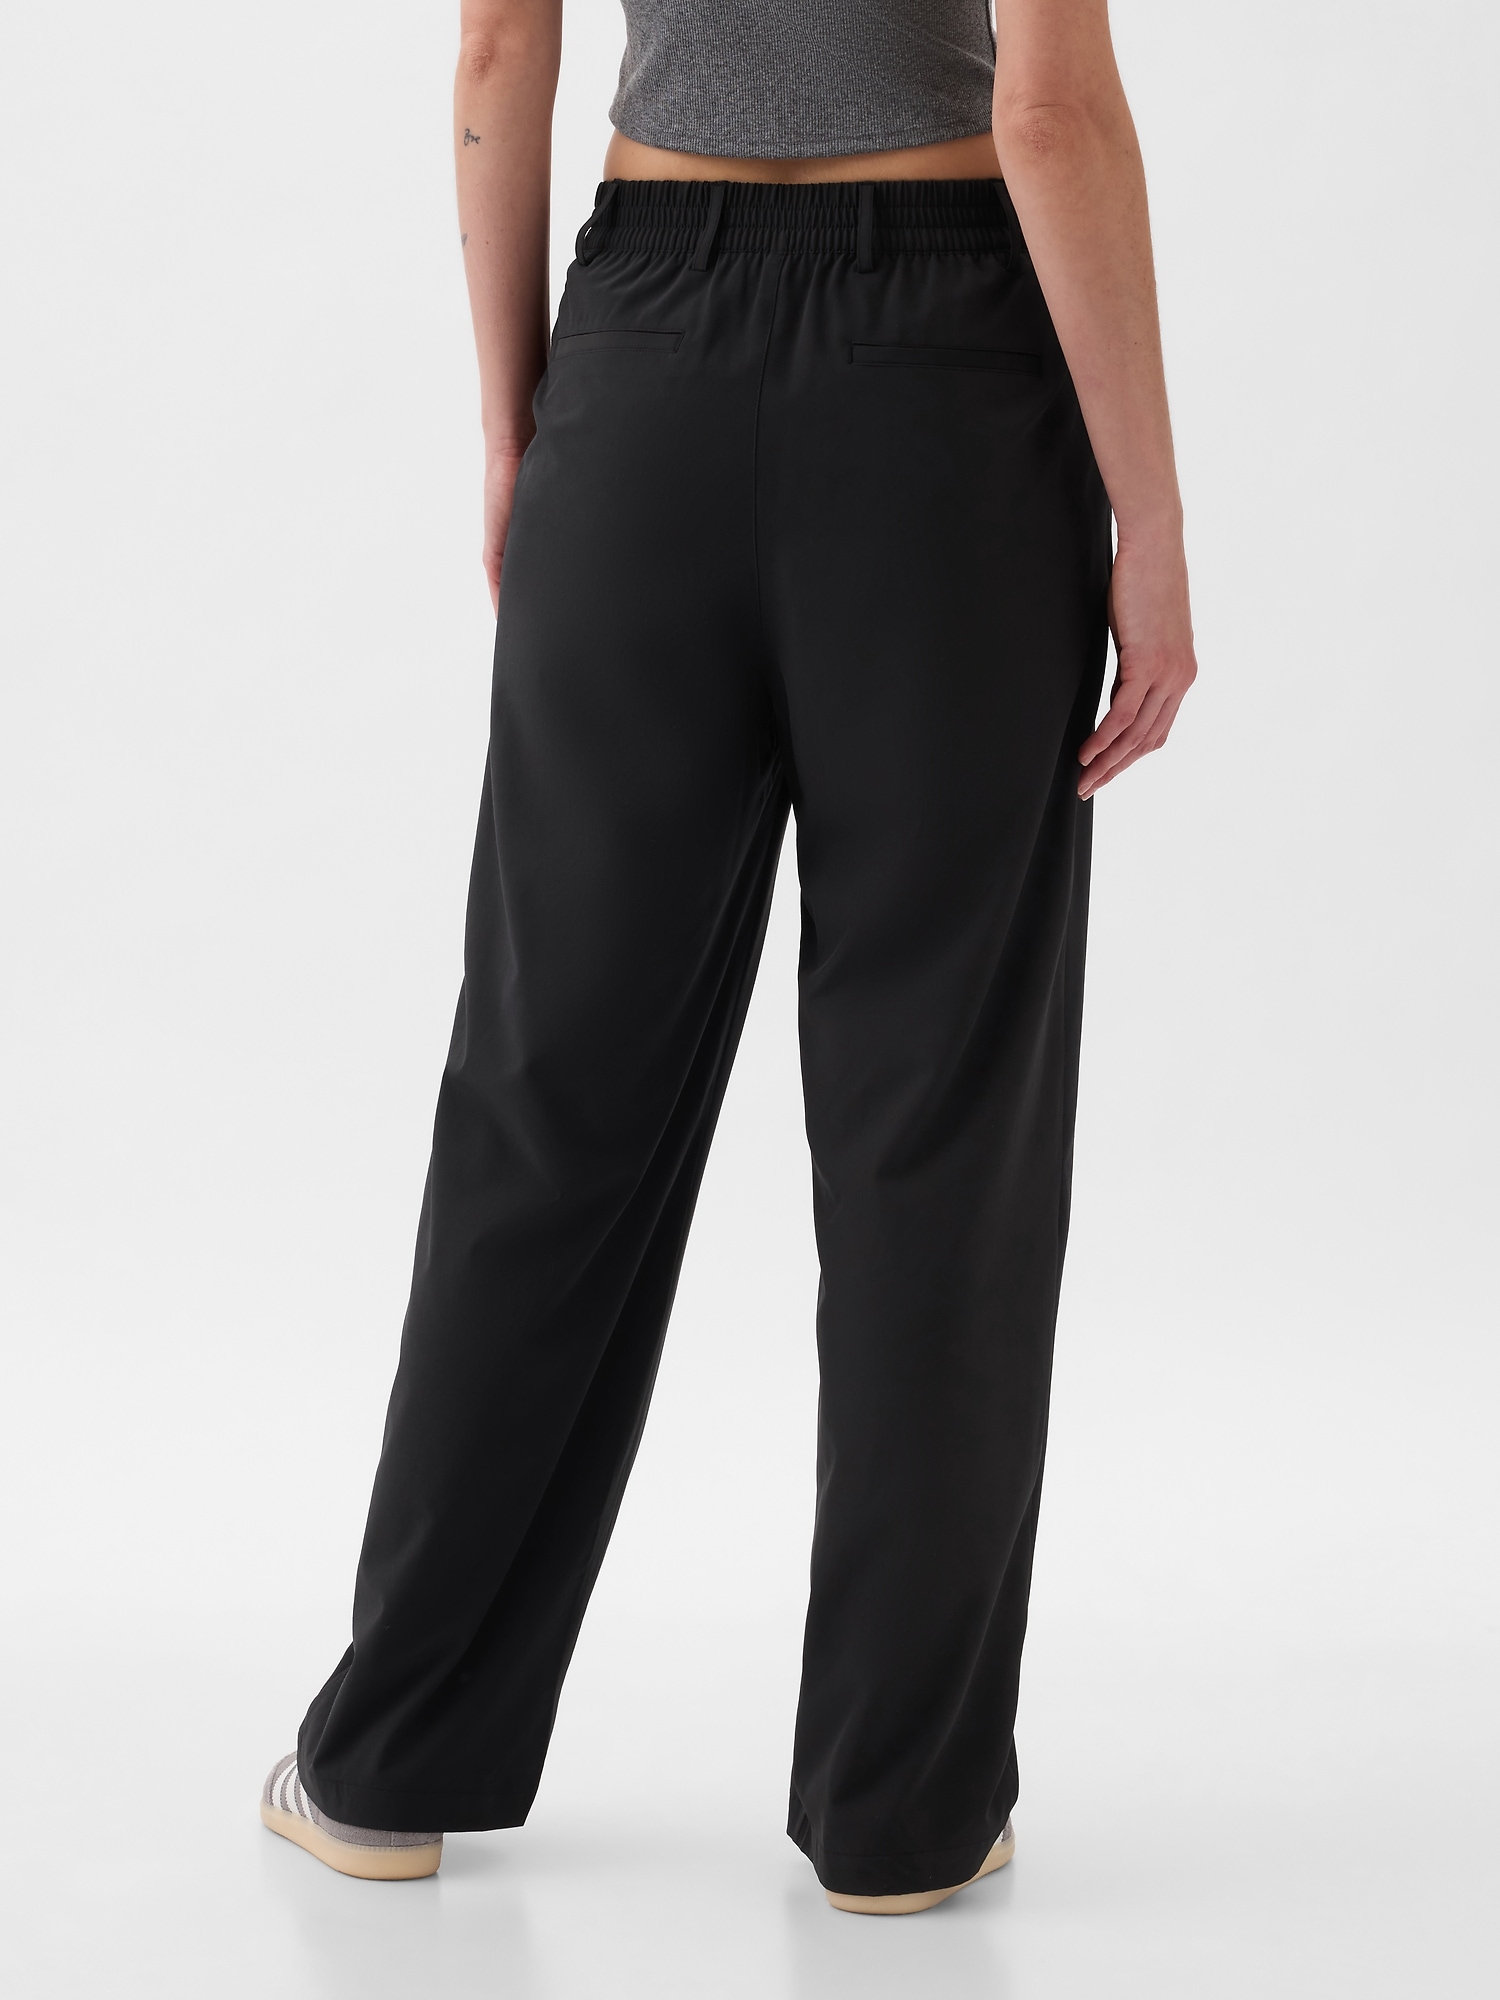 Gap Fit Camo Multi Color Black Active Pants Size XL - 67% off